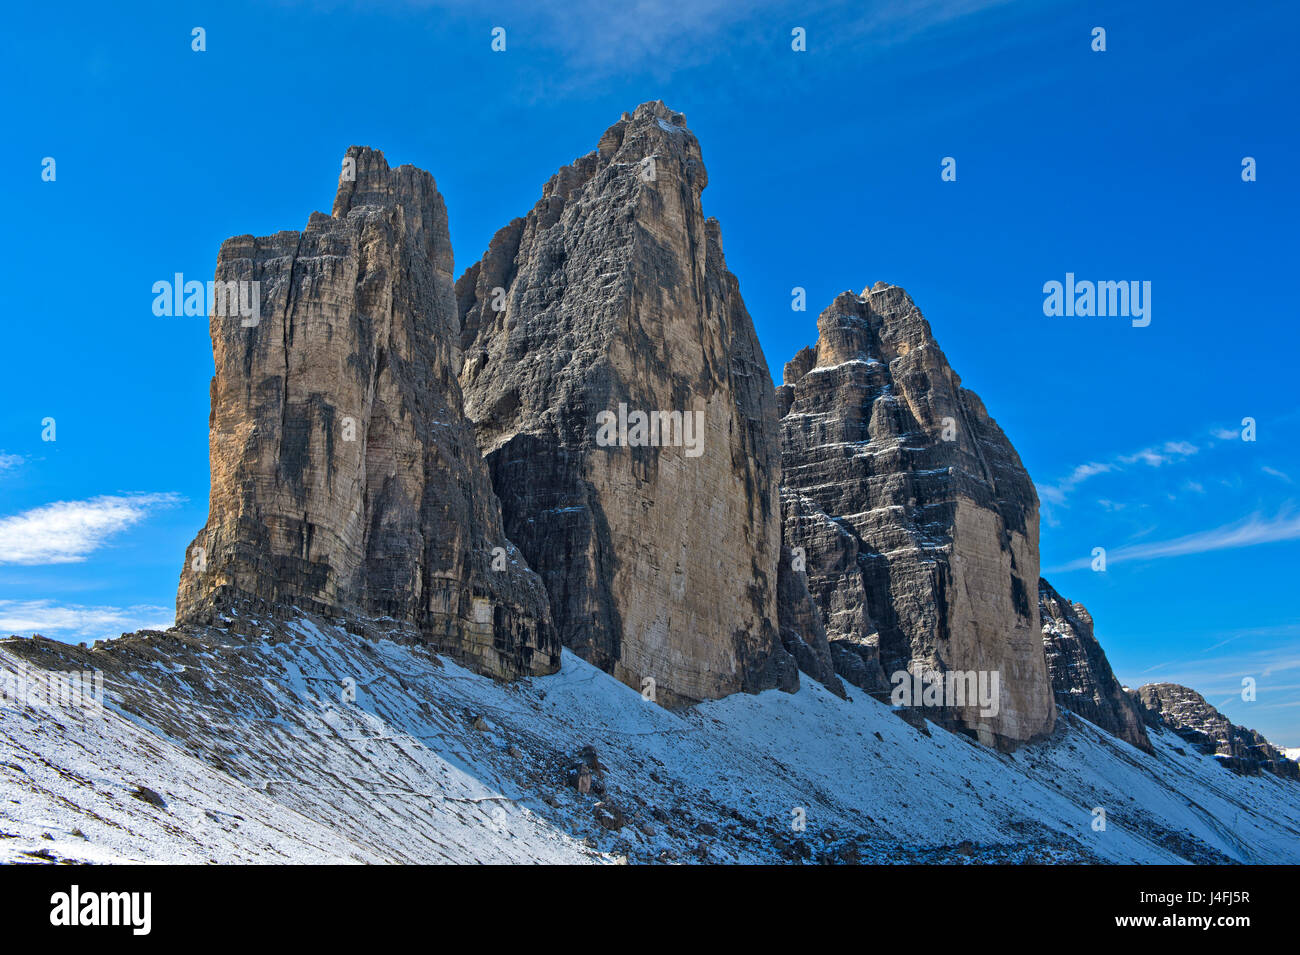 Début de l'hiver à la montagne trois pics, Tre Cime di Lavaredo, Drei Zinnen, Dolomites de Sesto, le Tyrol du Sud, Vénétie, Italie Banque D'Images